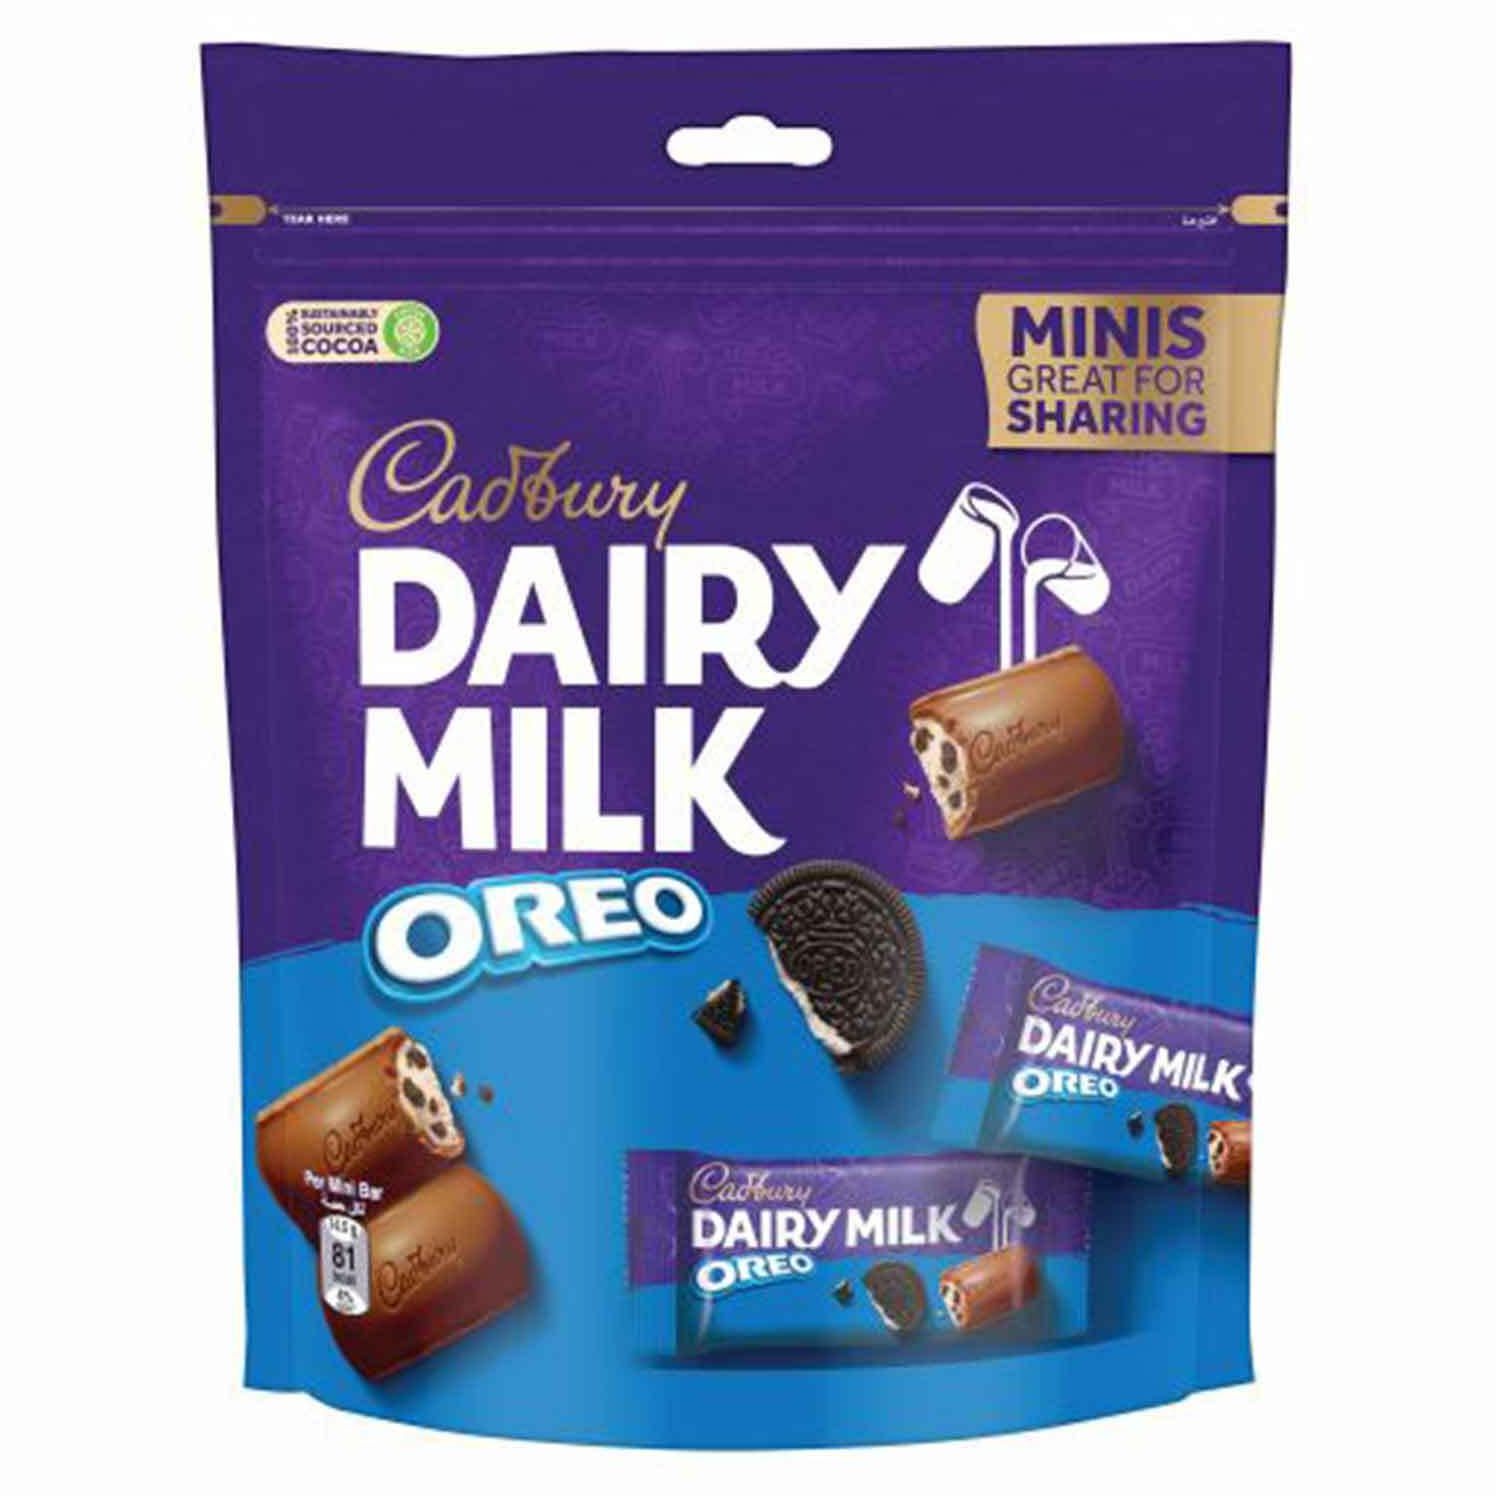 Cadbury dairy milk oreo mini 188 g